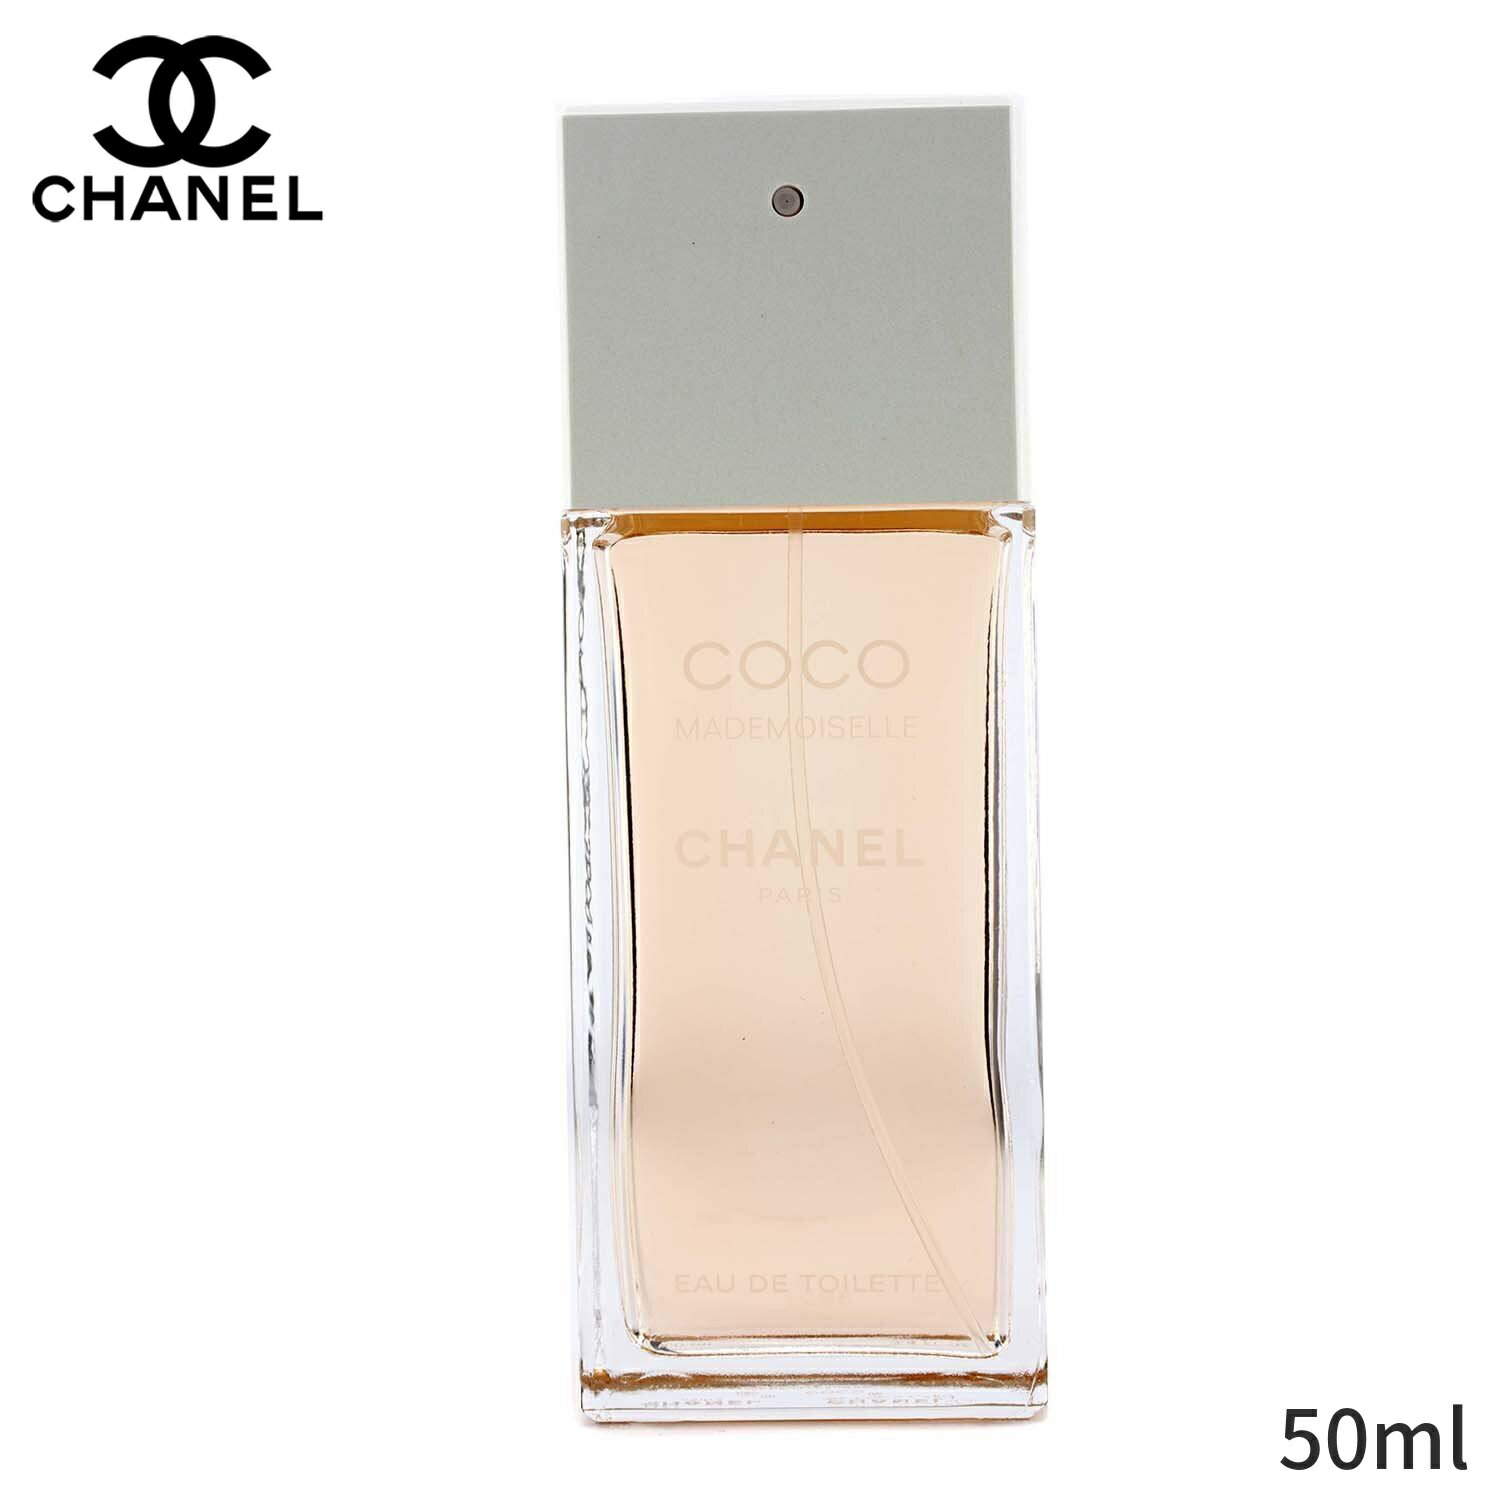 シャネル 香水 Chanel ココマドモアゼル オードトワレスプレー 50ml レディース 女性用 フレグランス 誕生日プレゼント ギフト 人気 ブランド コスメ